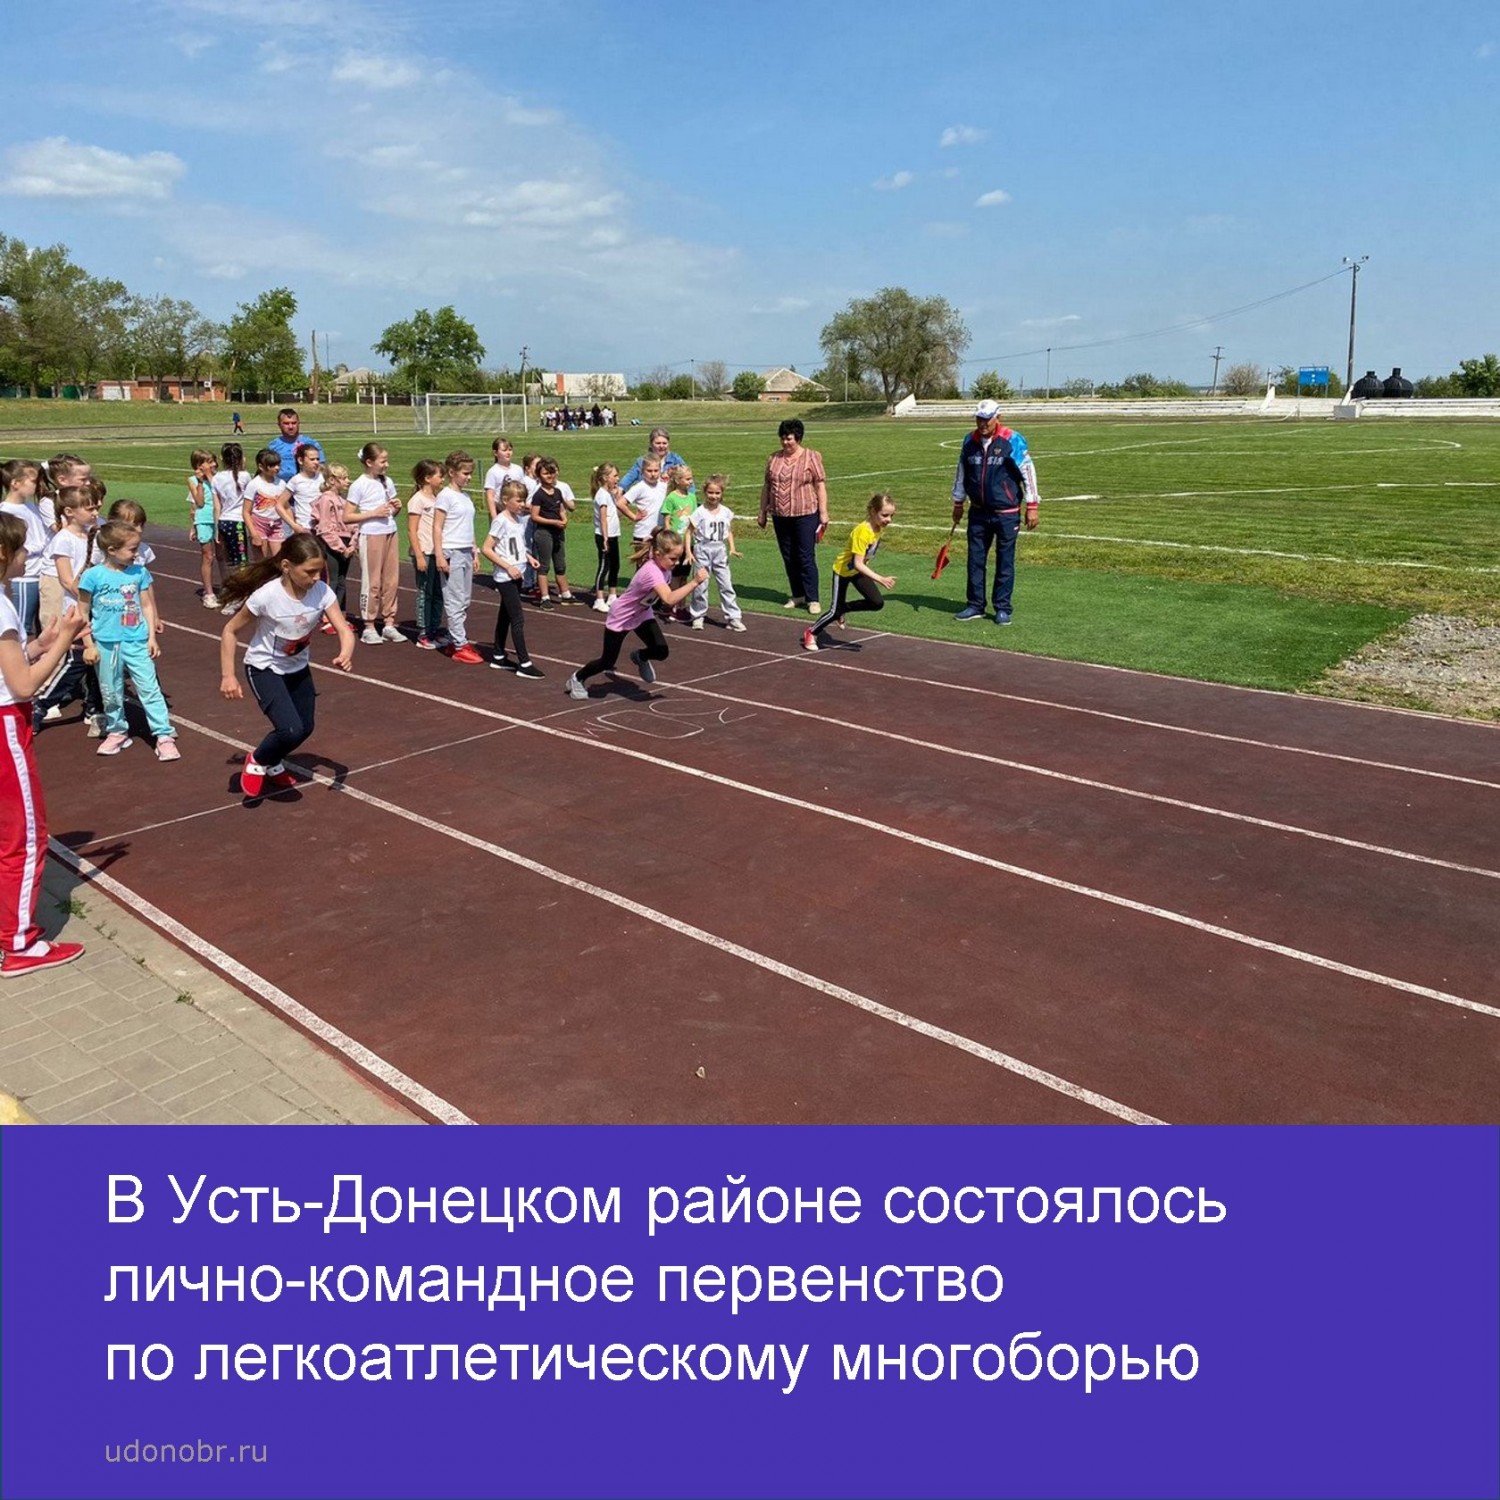 В Усть-Донецком районе состоялось лично-командное первенство по легкоатлетическому многоборью